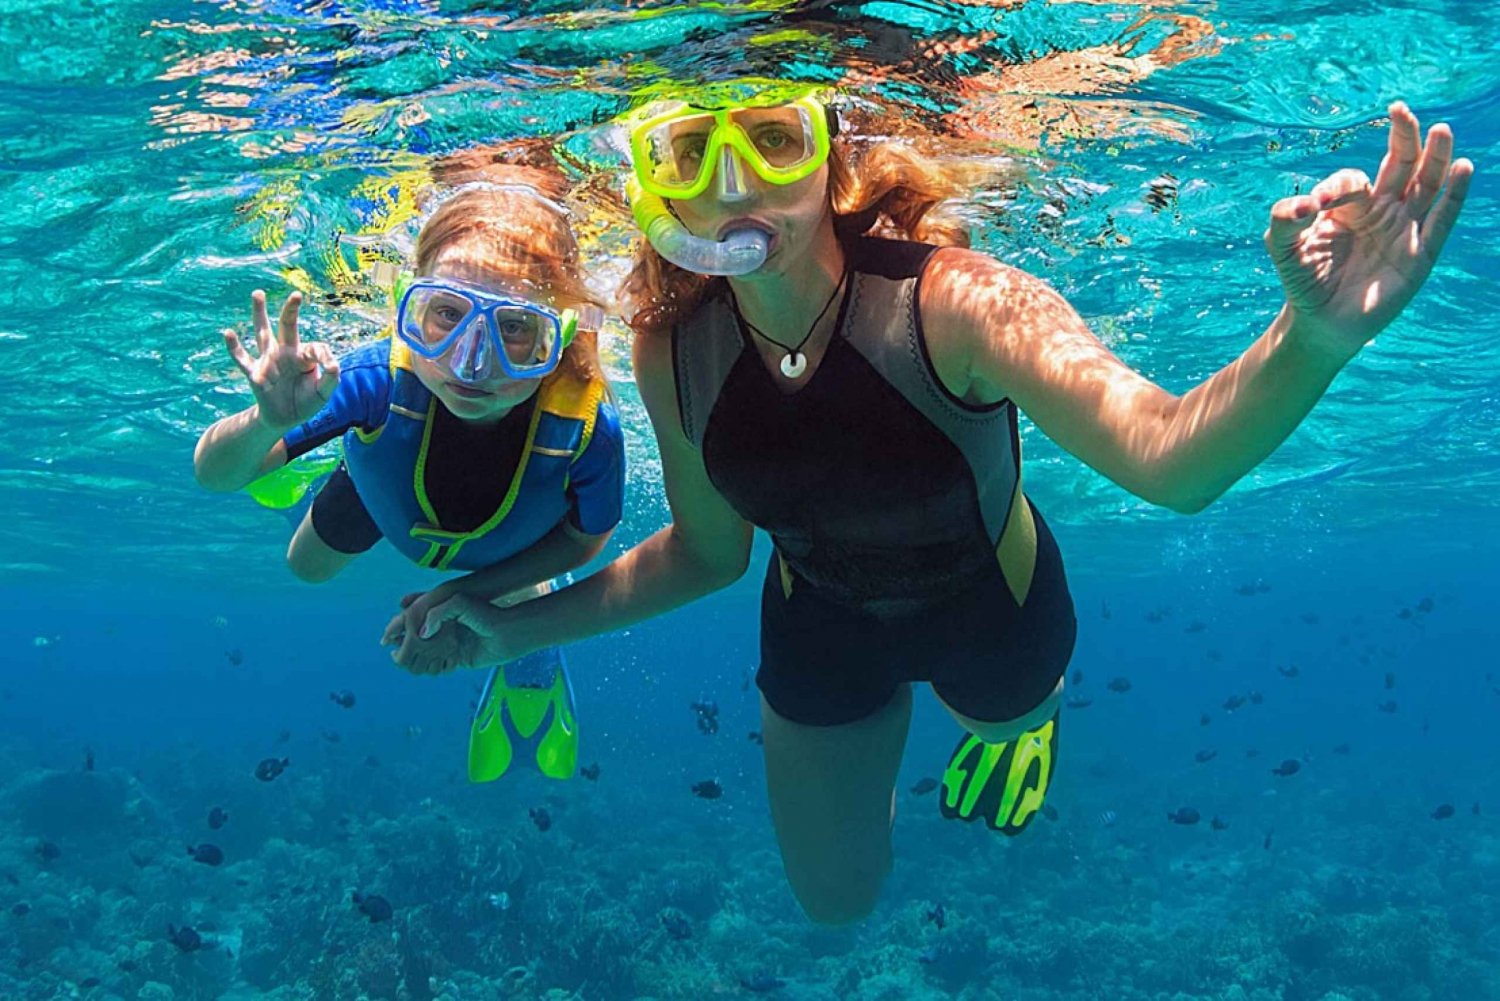 Fajardo: Excursión de snorkel en los arrecifes con bebidas y aperitivos